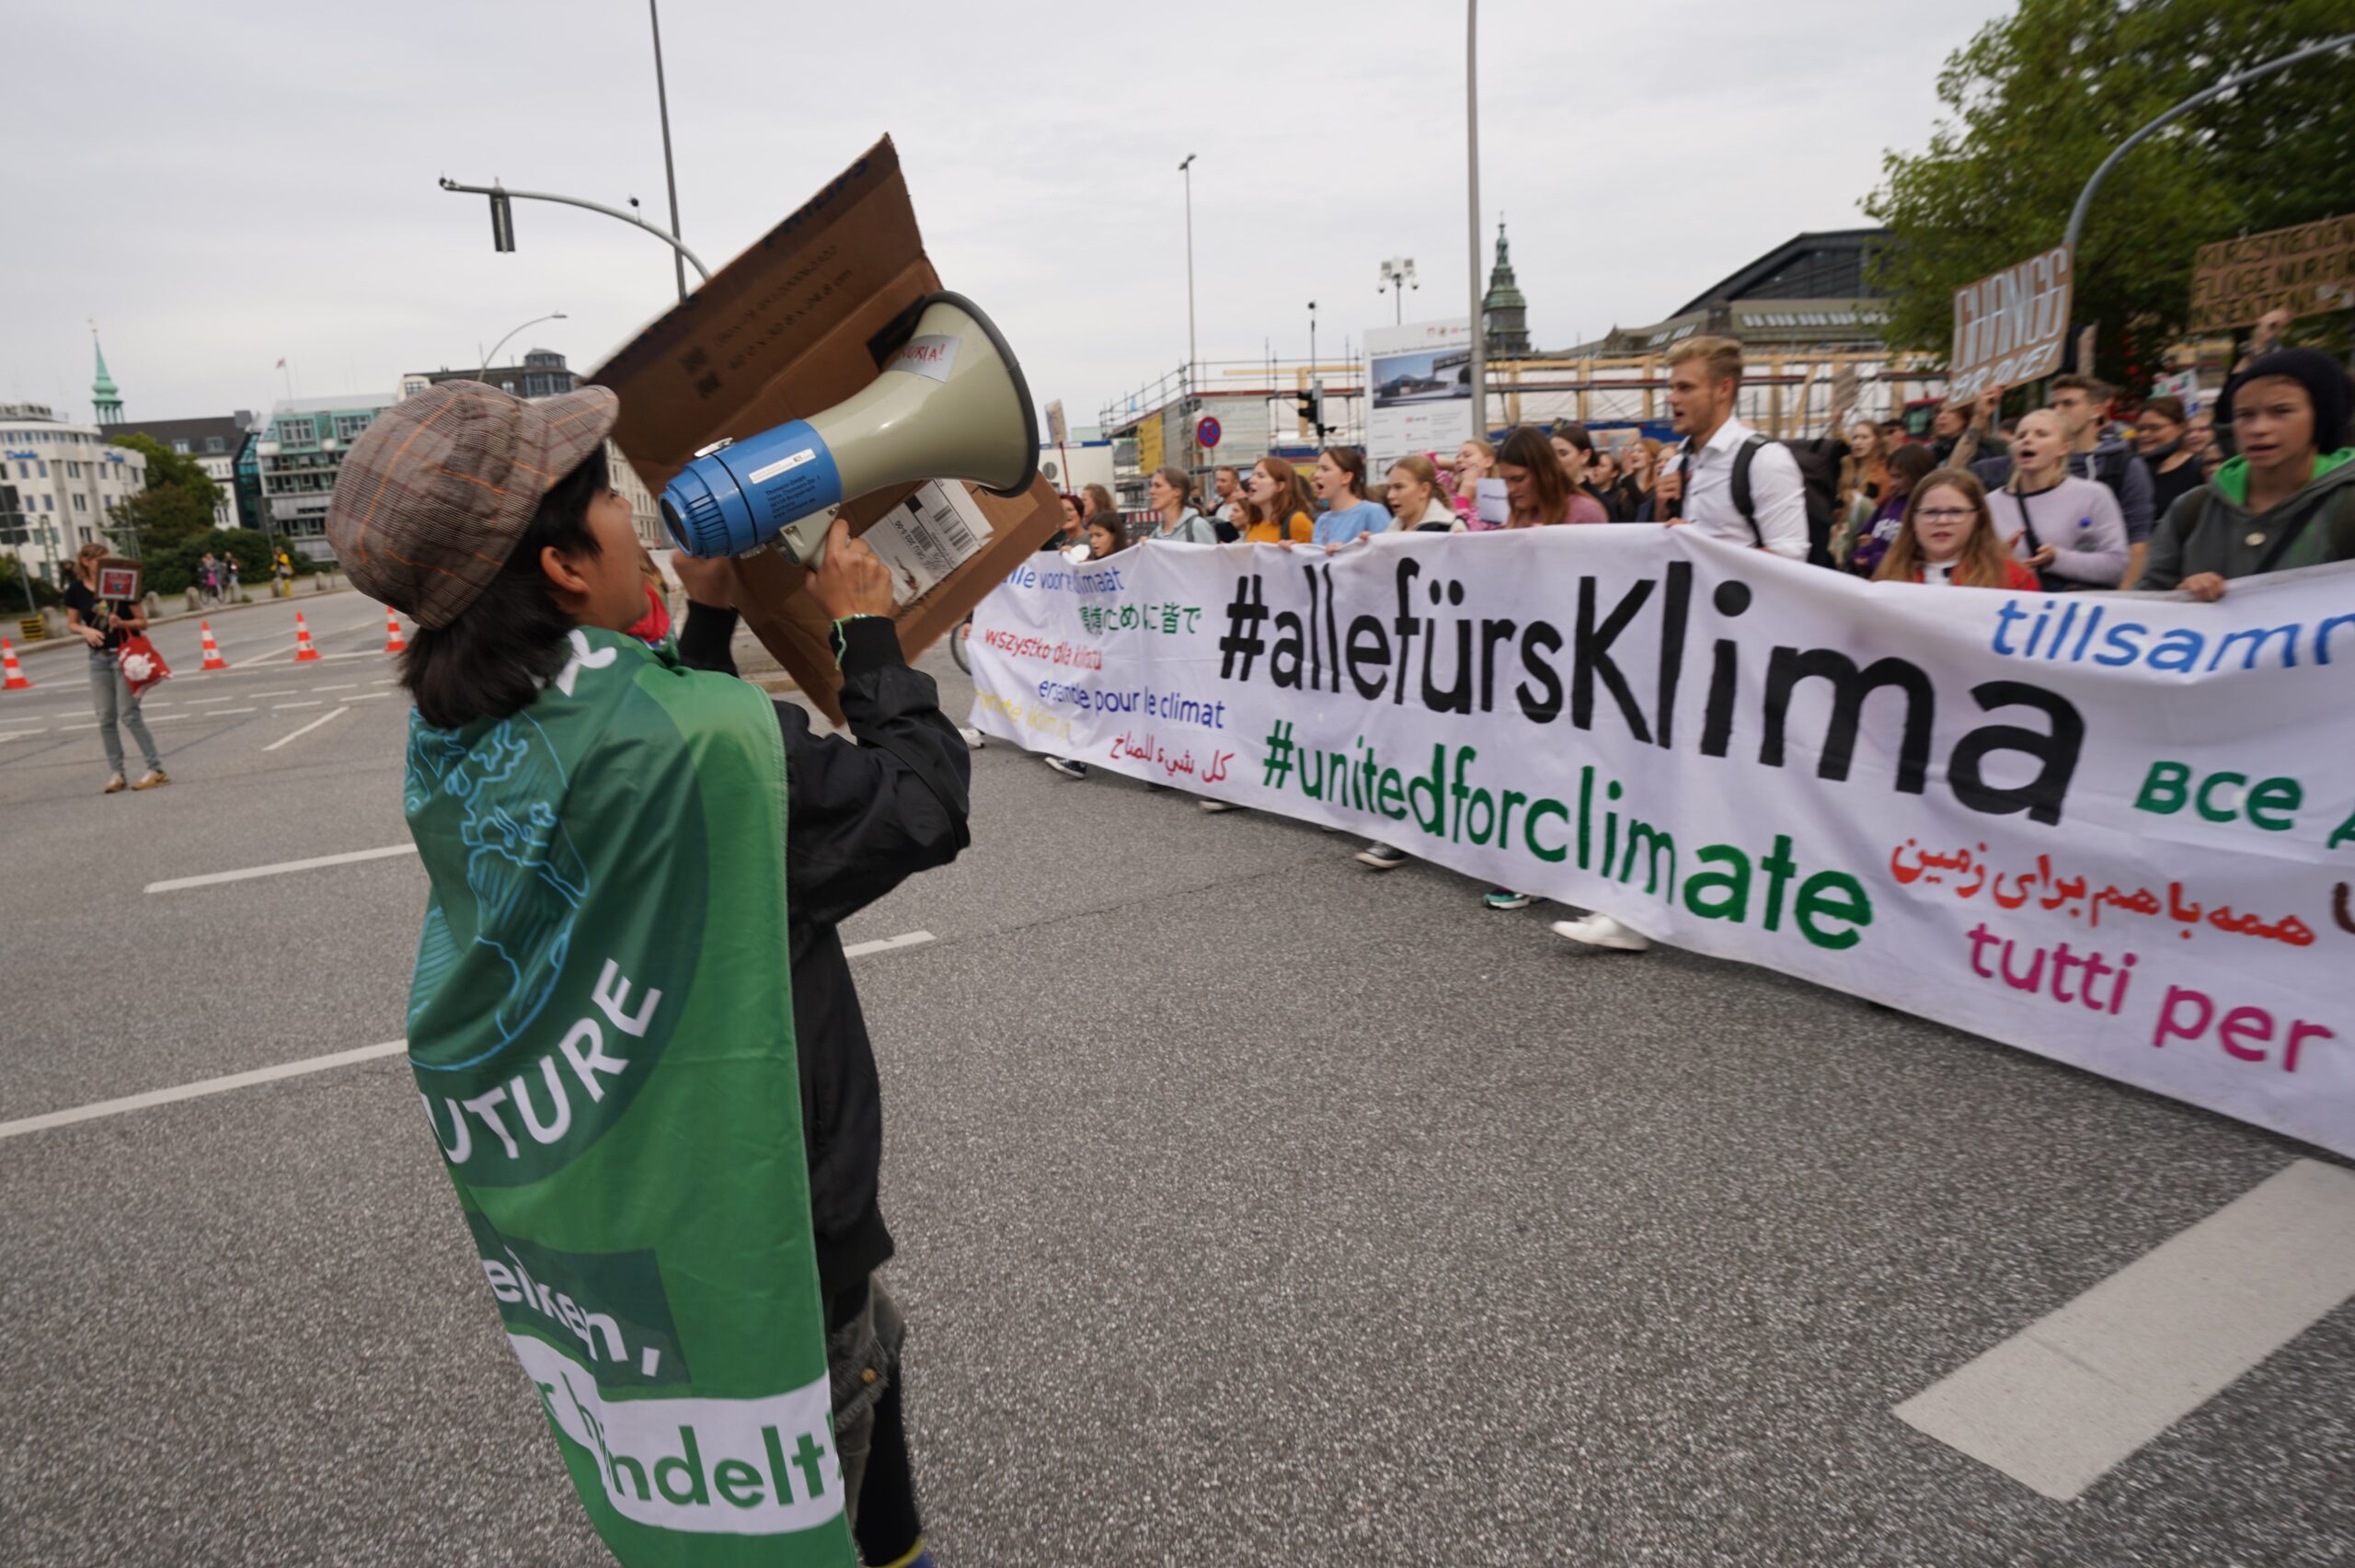 Ein Demonstrant hält ein Megaphon vor dem Mund und spricht zu den Teilnehmern hinter dem Banner "alle fürs Klima"